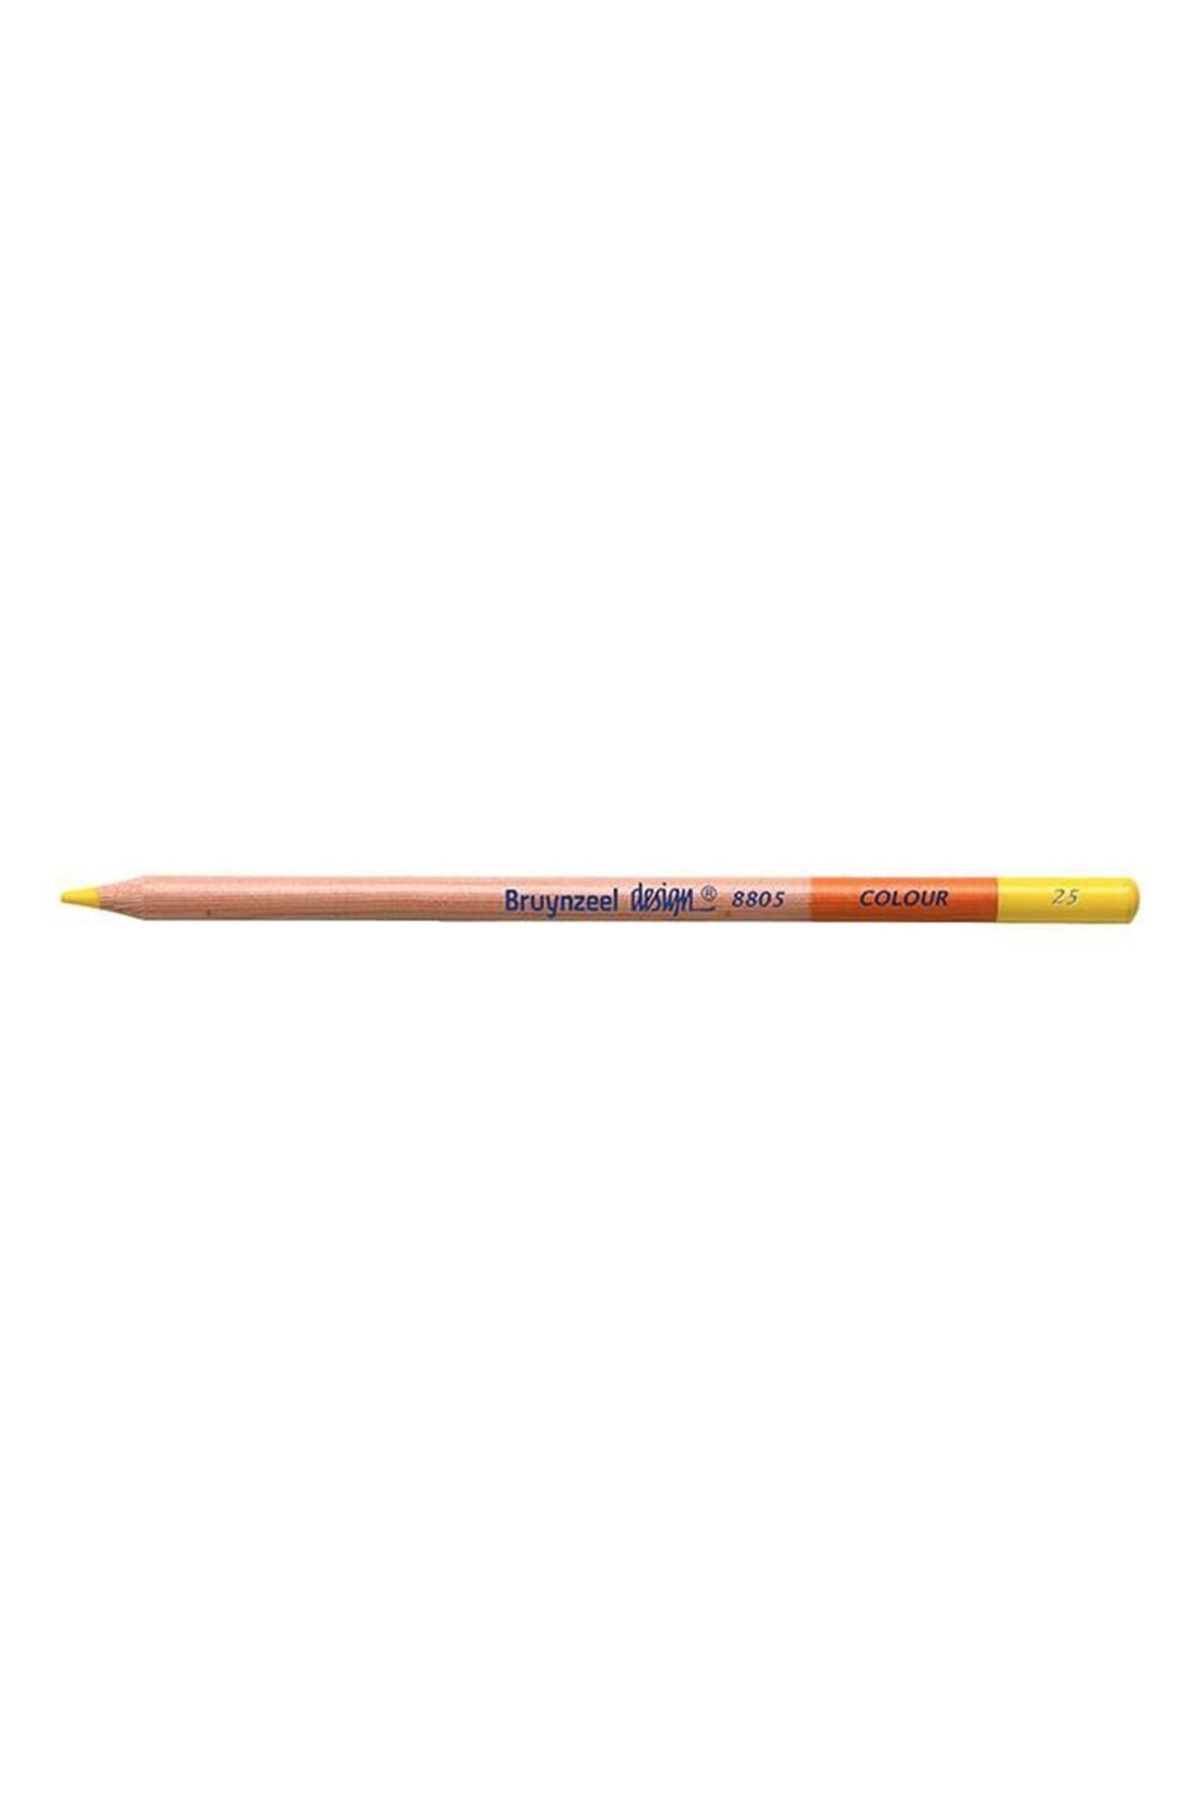 Bruynzeel Design Limon Sarısı Renkli Kurşun Kalem 880525k